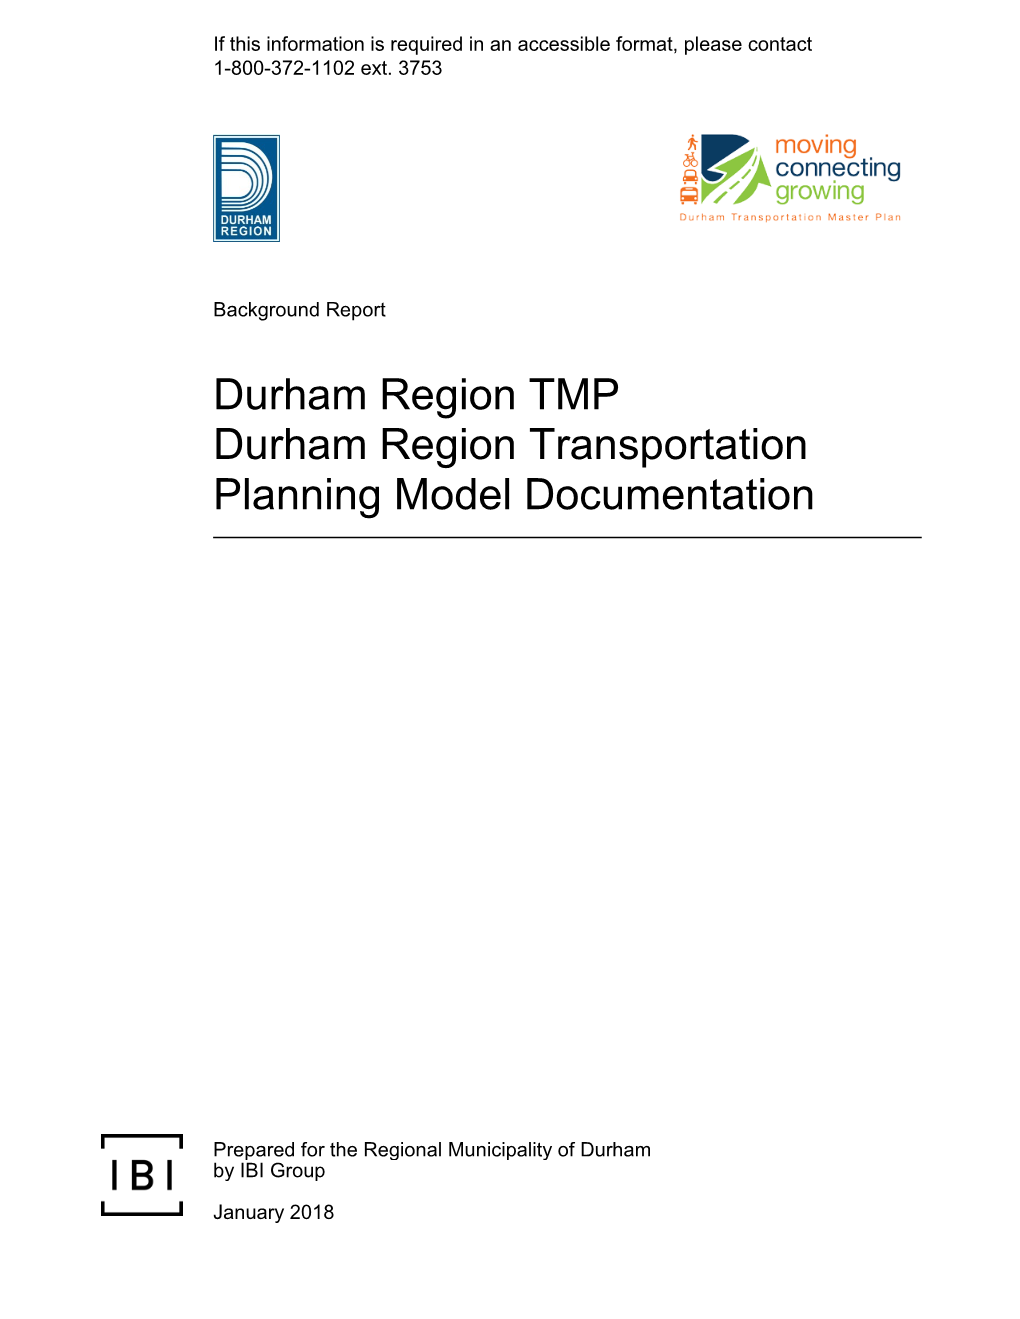 Durham Region Transportation Planning Model Documentation